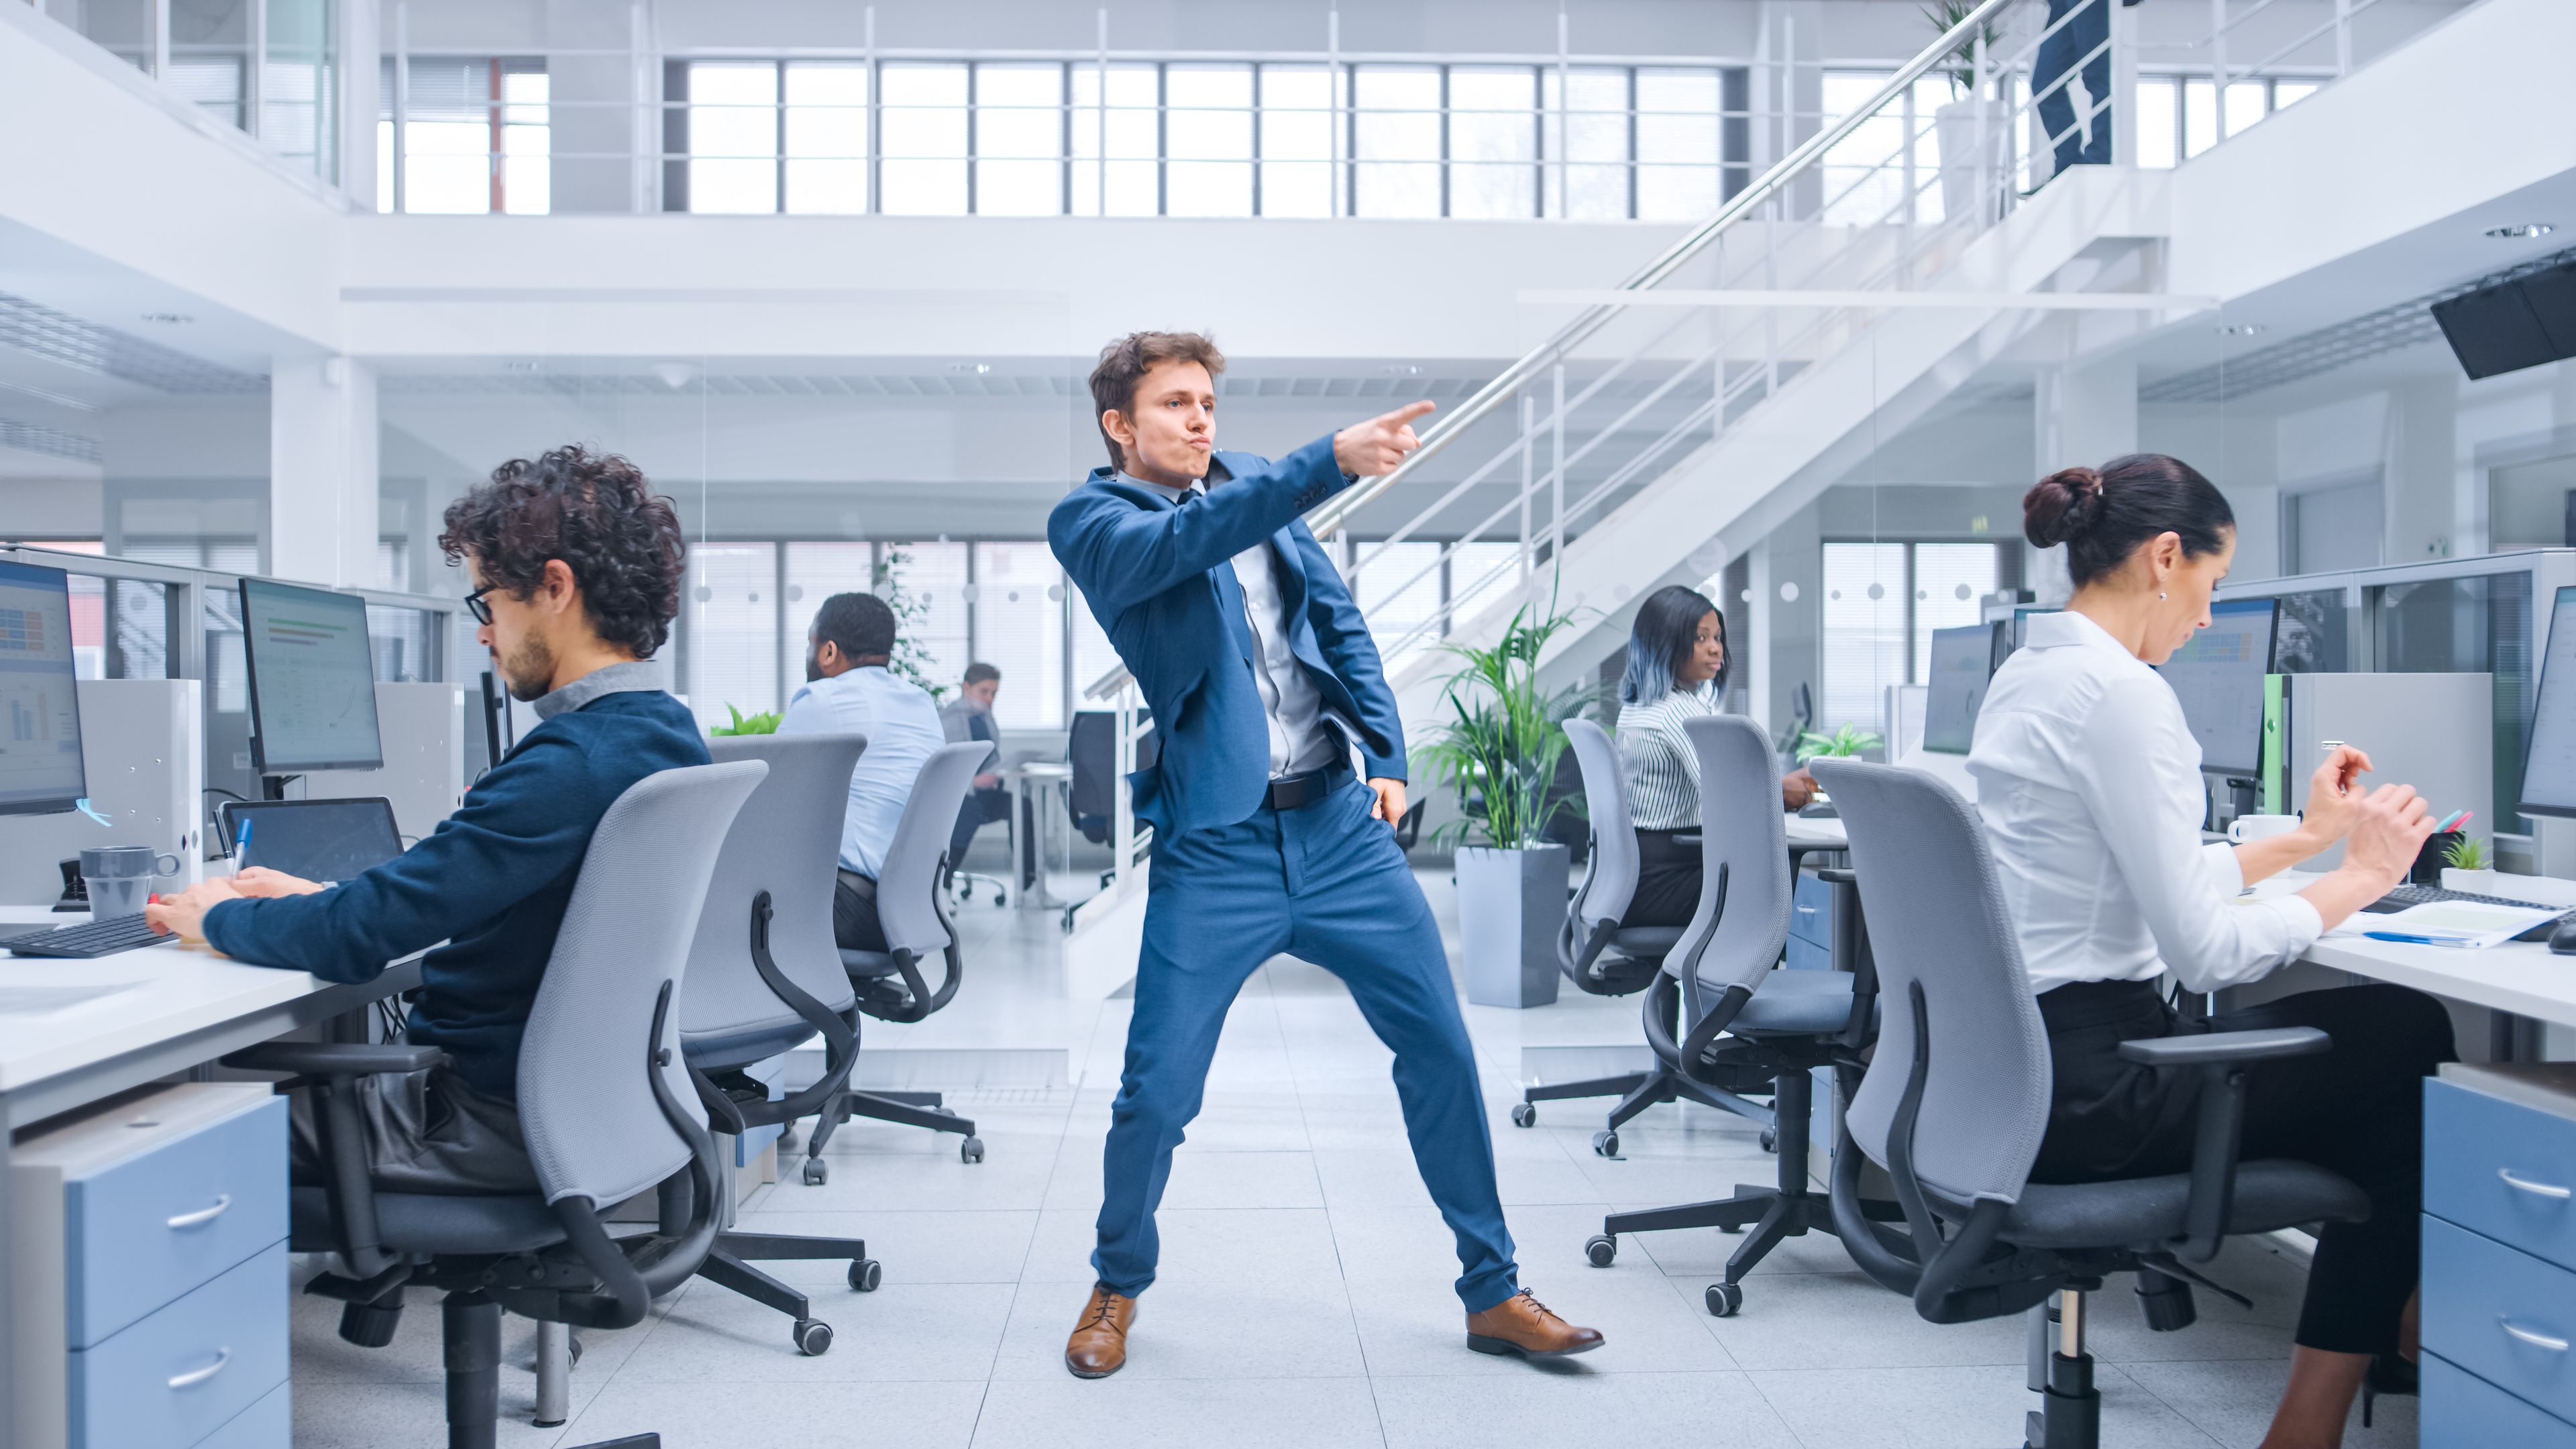 Una persona baila en medio de una oficina.